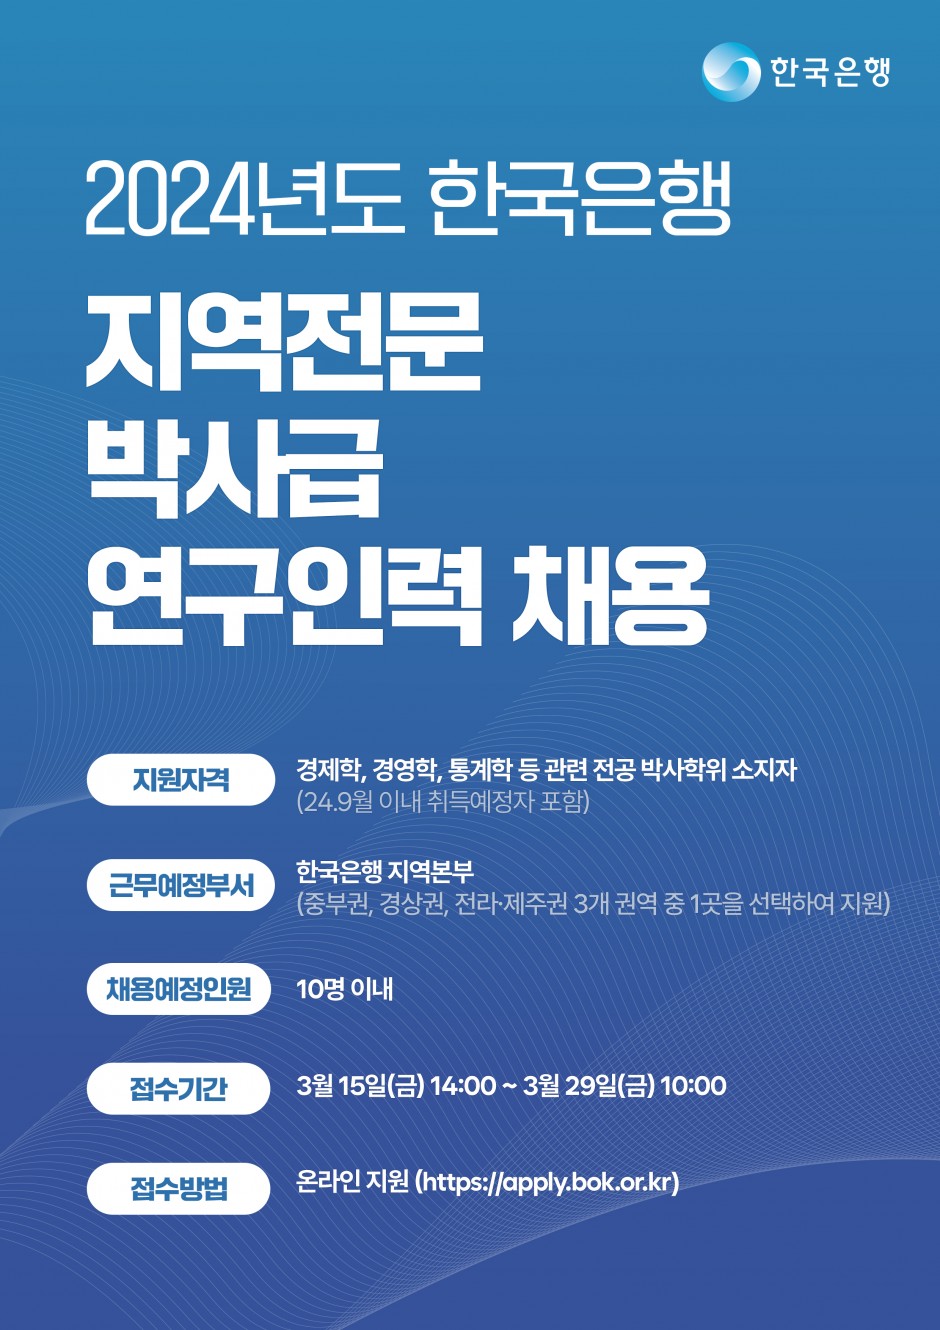 (붙임1) 2024년도 한국은행 지역전문 박사급 연구인력 채용 홍보 포스터(A4)